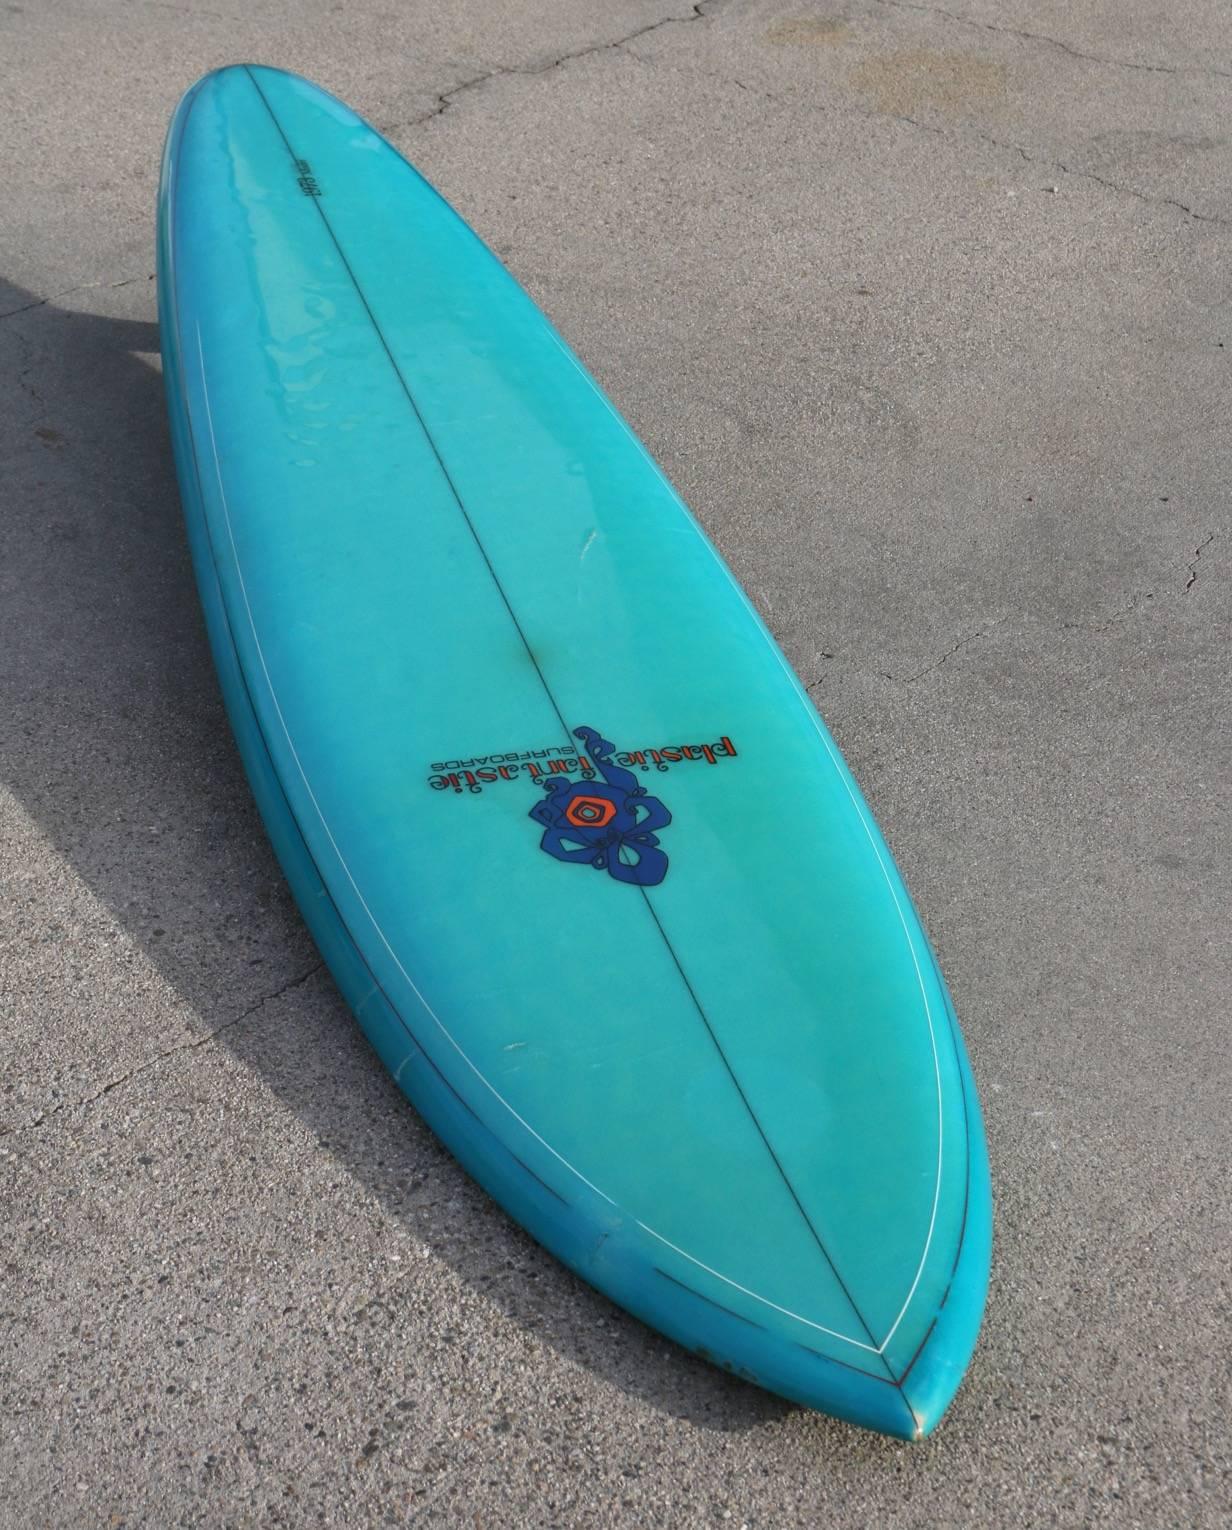 plastic fantastic surfboards for sale